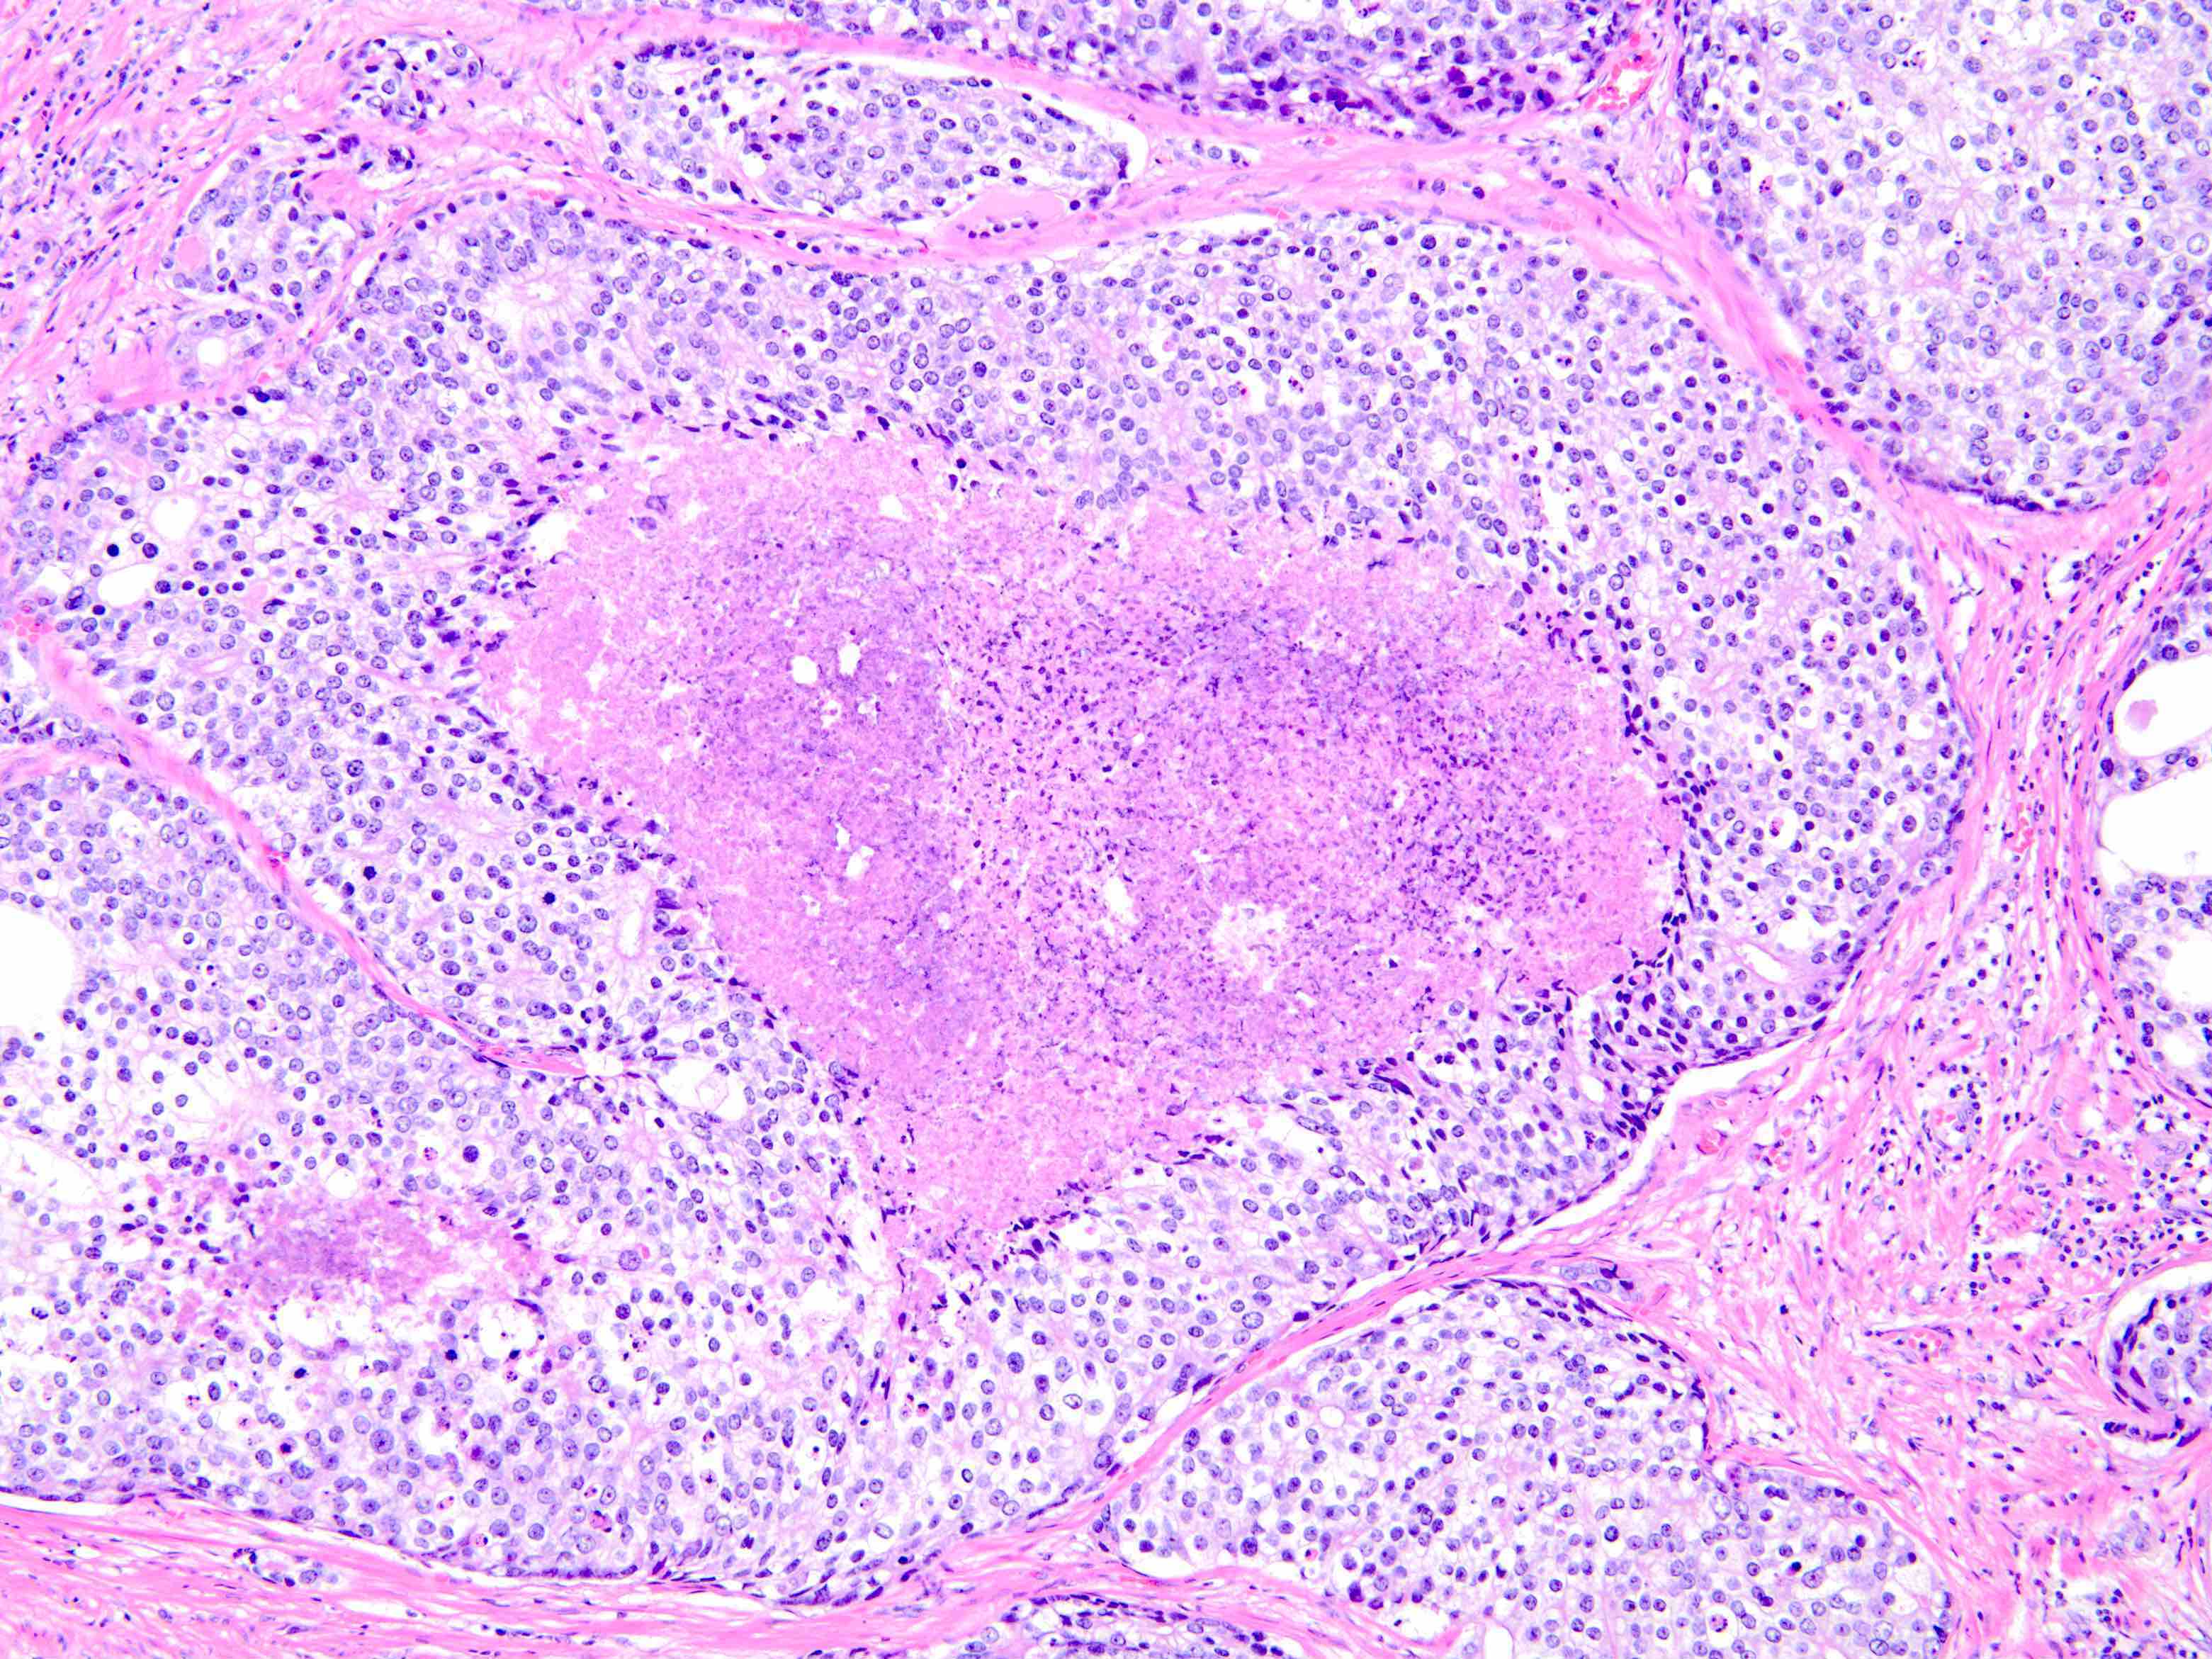 prostate adenocarcinoma pathology outlines